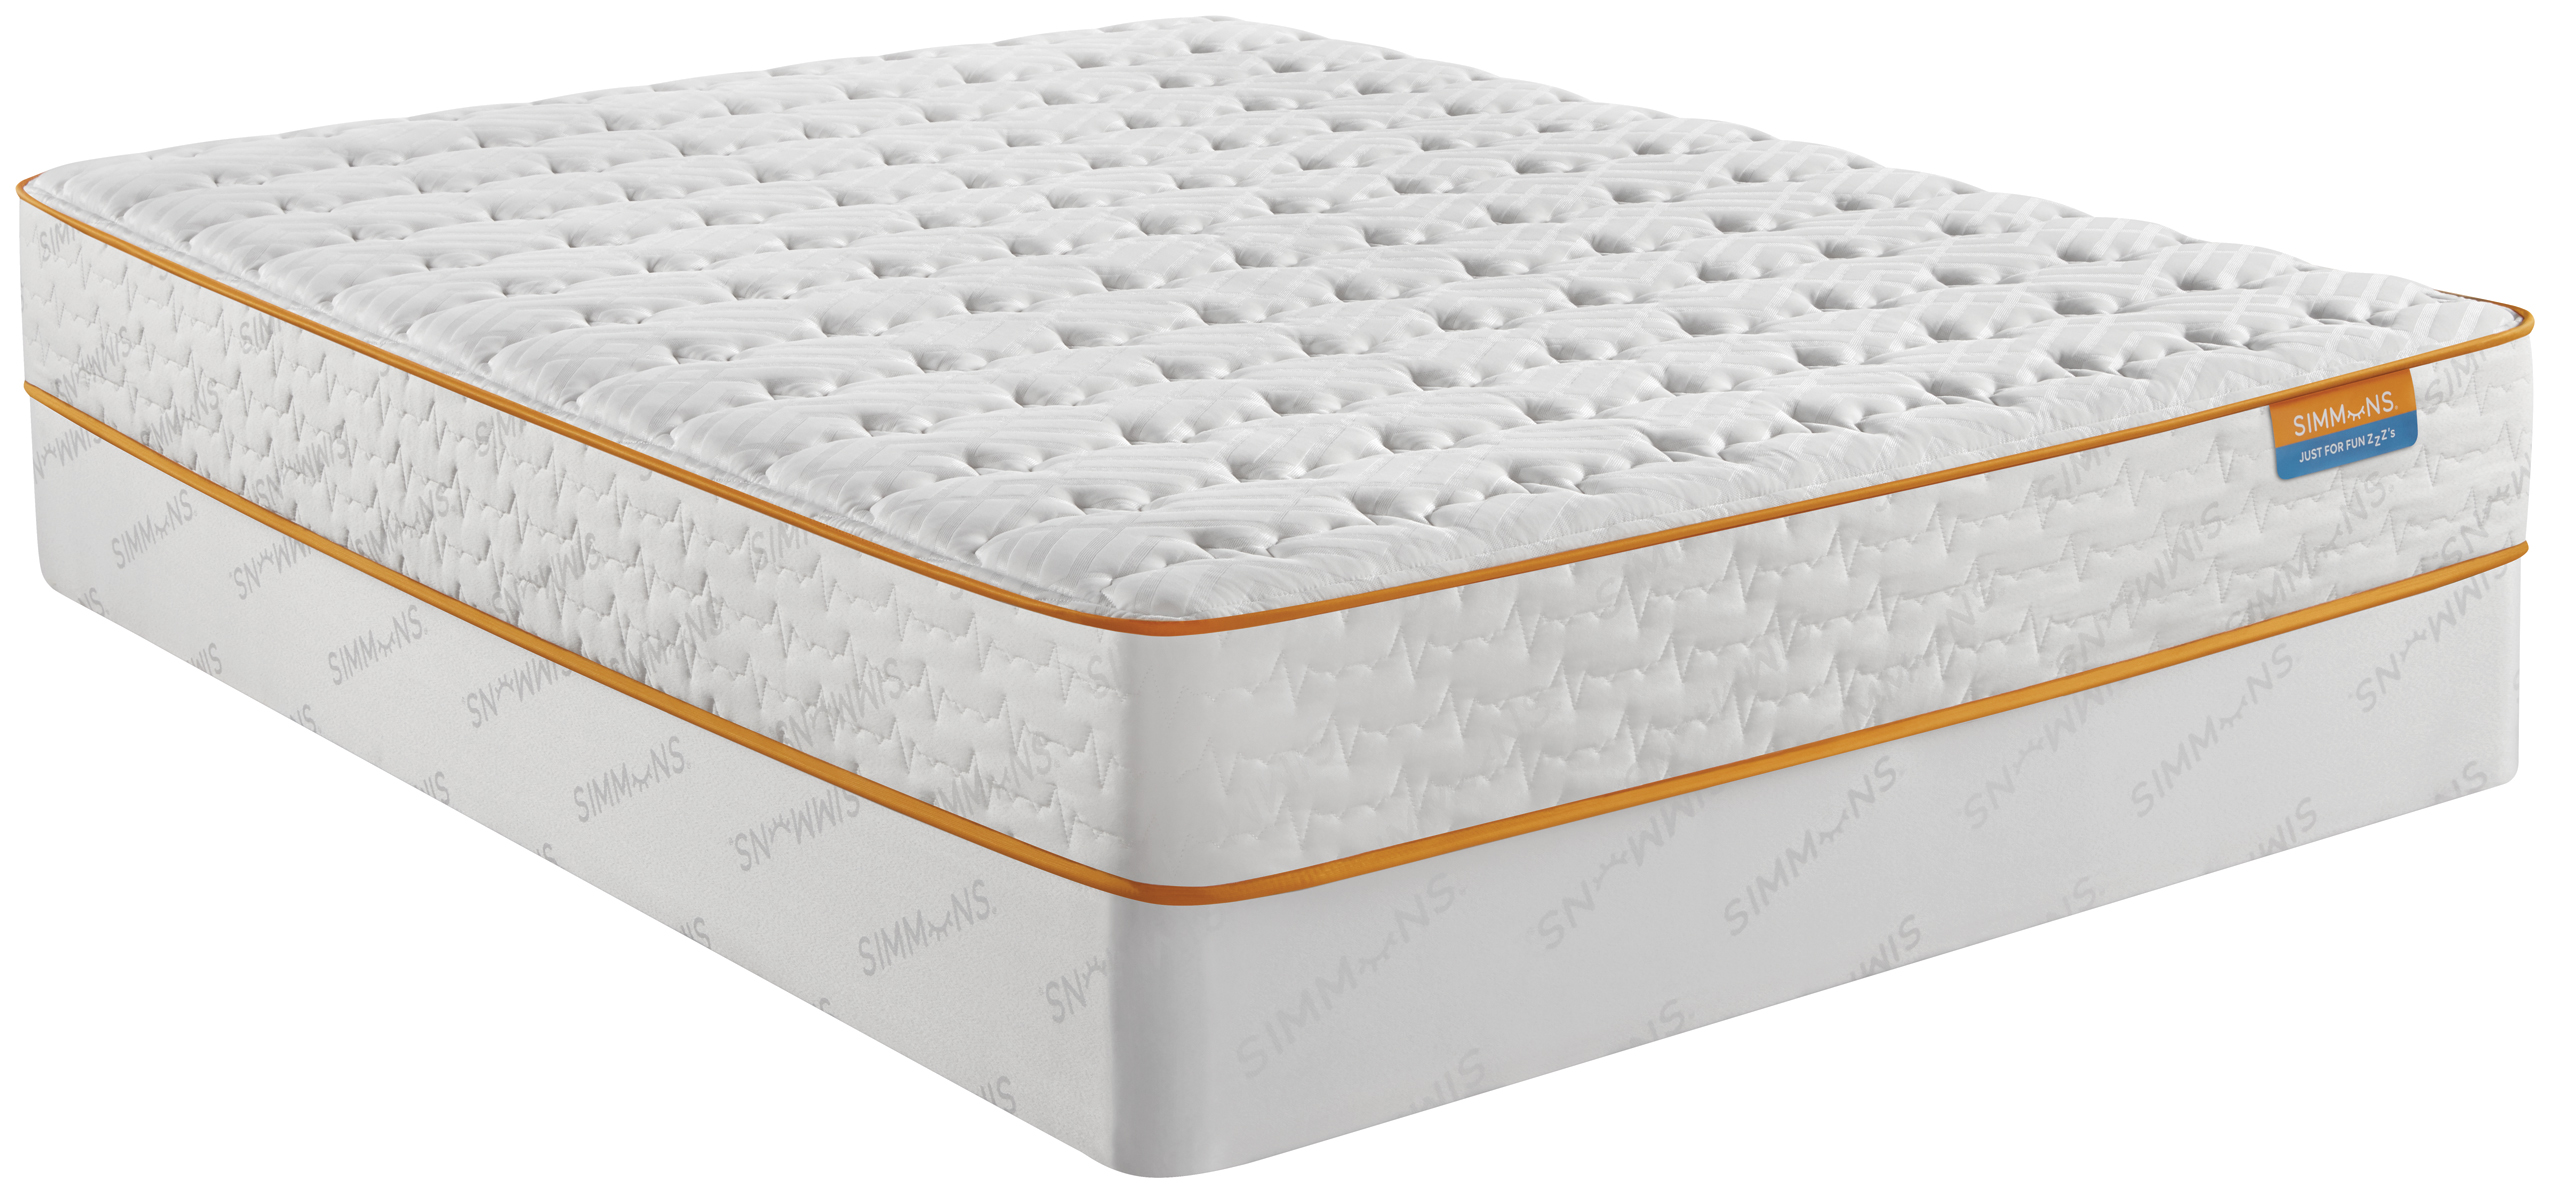 simmons sleep goalzzz plush pillow top mattress